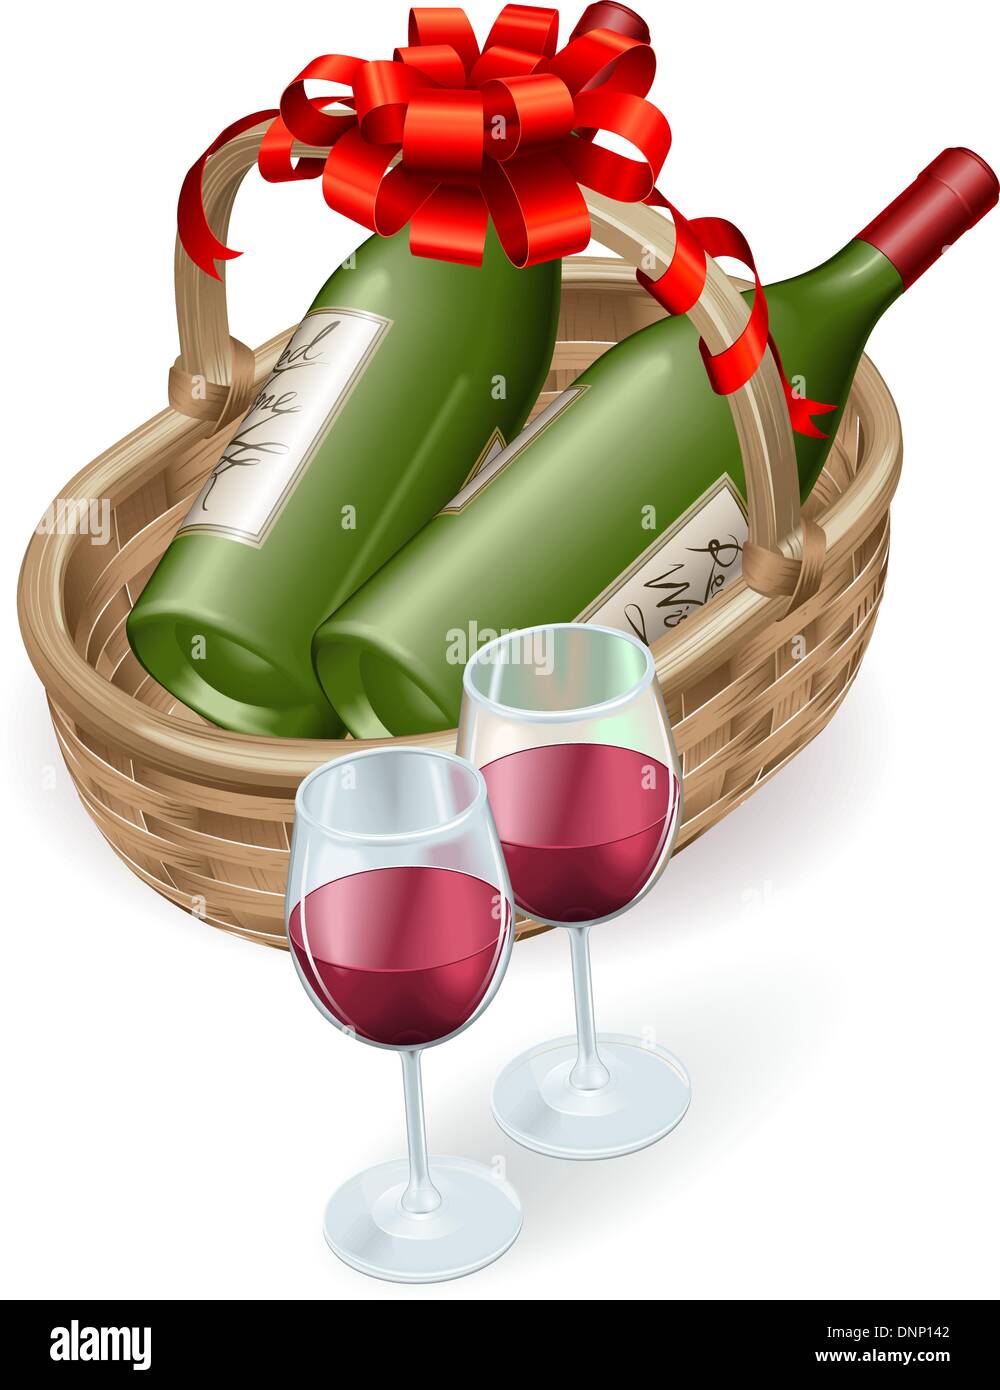 Illustration von Wein von Weidenkorb mit Flasche Rotwein und Gläsern und Dekoration Band und Schleife. Stock Vektor